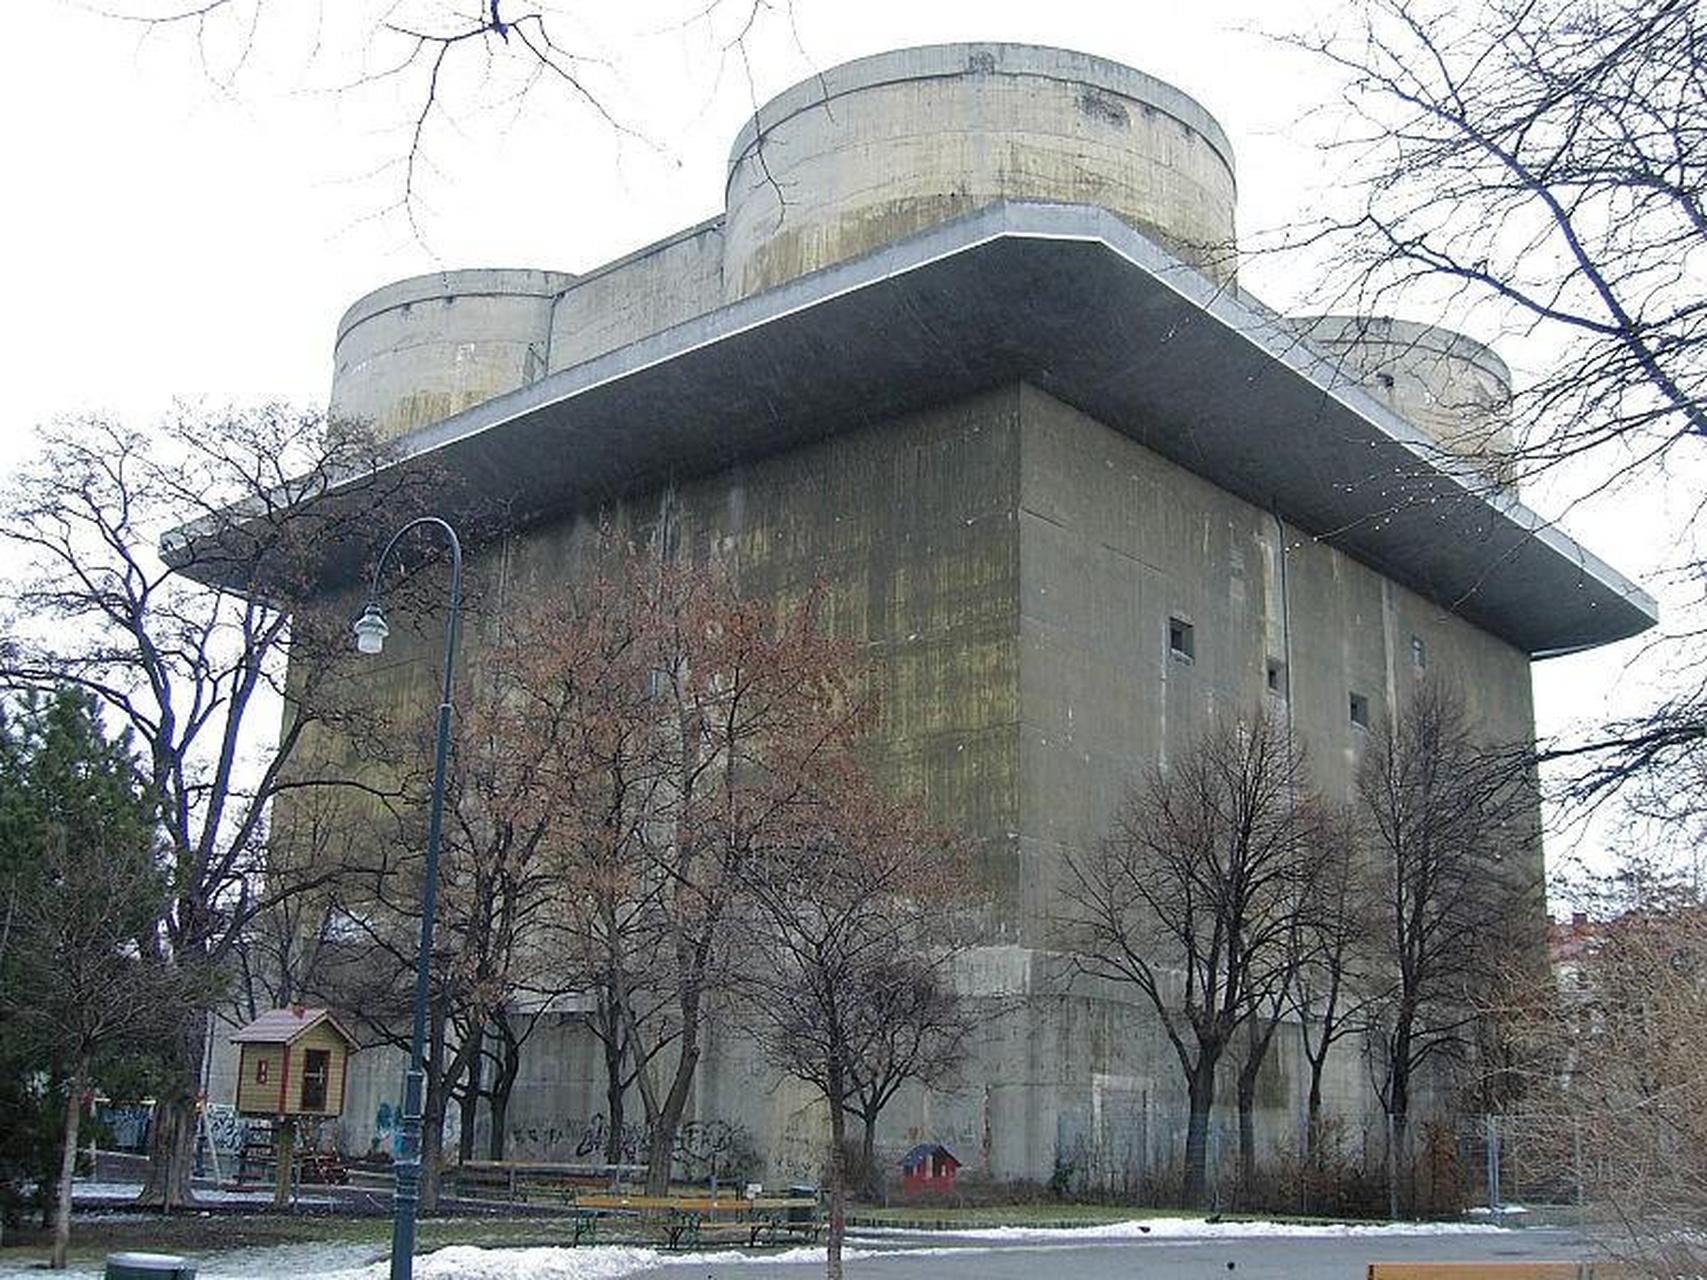 作为一项永备工事建设工程,防空塔是德国人在二战期间的一项重要建设